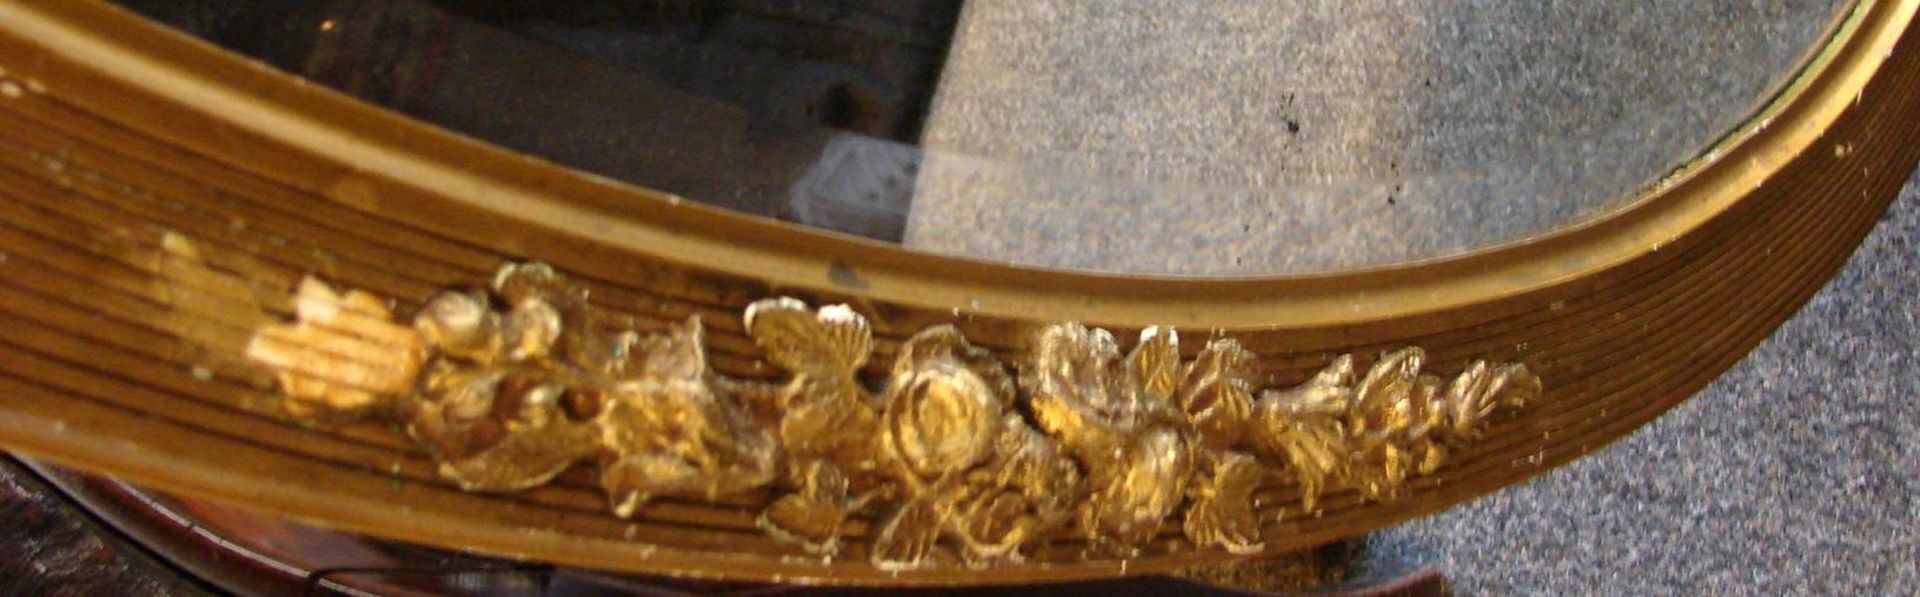 Spiegel, oval, mit Rosenornamenten, Facettenschliff, ca. 84 x 56 cm - Bild 3 aus 3